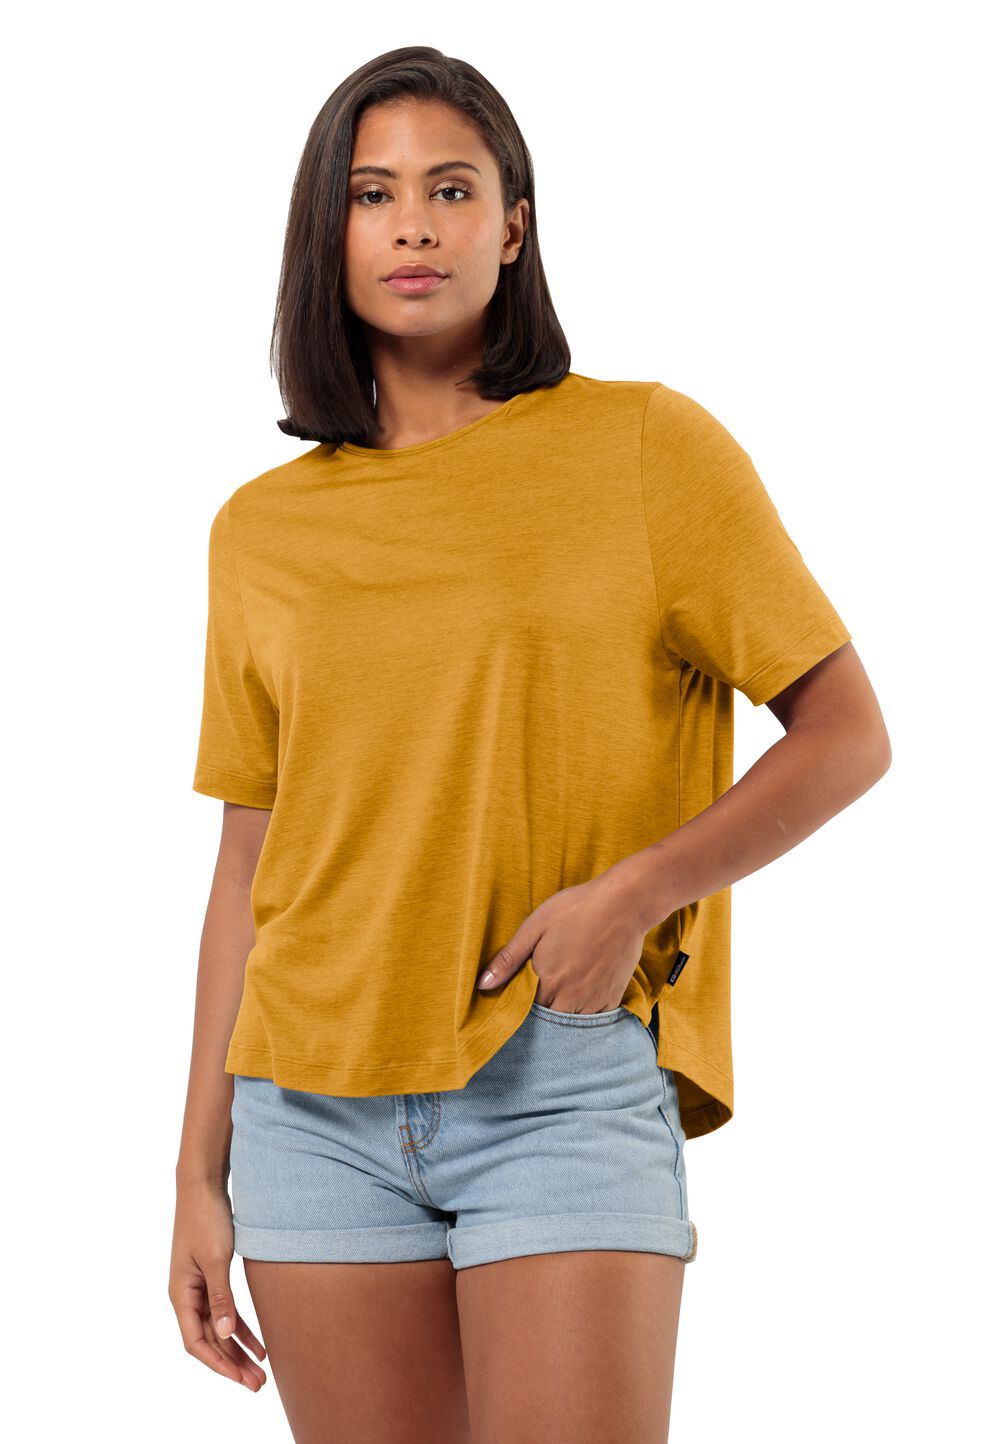 Jack Wolfskin Travel T-Shirt Women Functioneel shirt Dames XL bruin curry